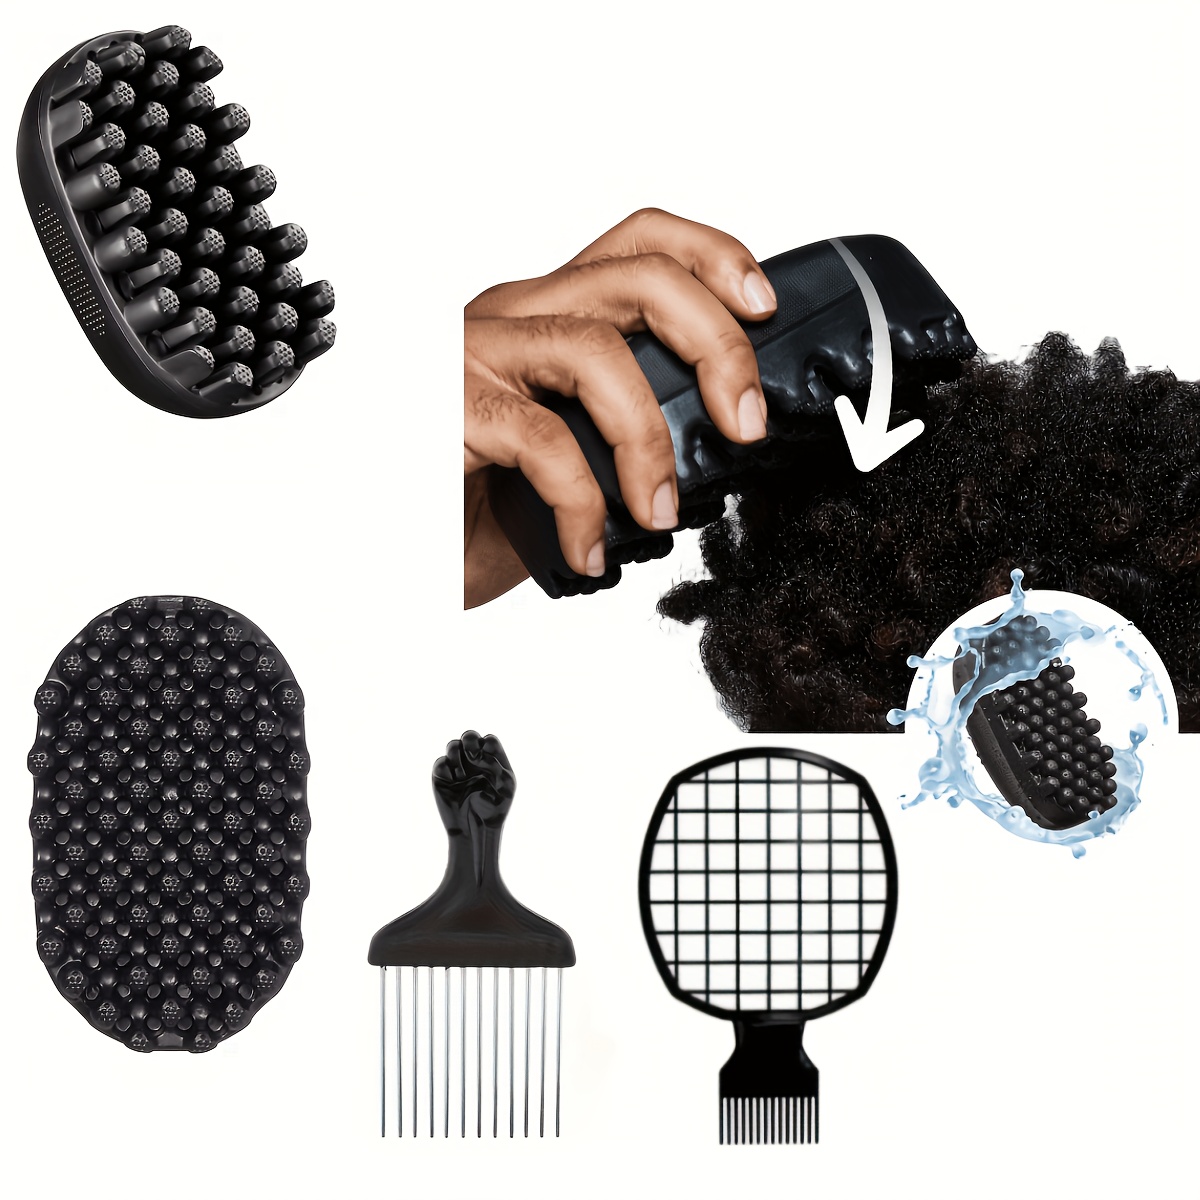 Éponges à cheveux Magic Twist - éponge Twist, brosse éponge pour cheveux,  éponge pour boucles femmes et hommes avec pioche à cheveux gratuite